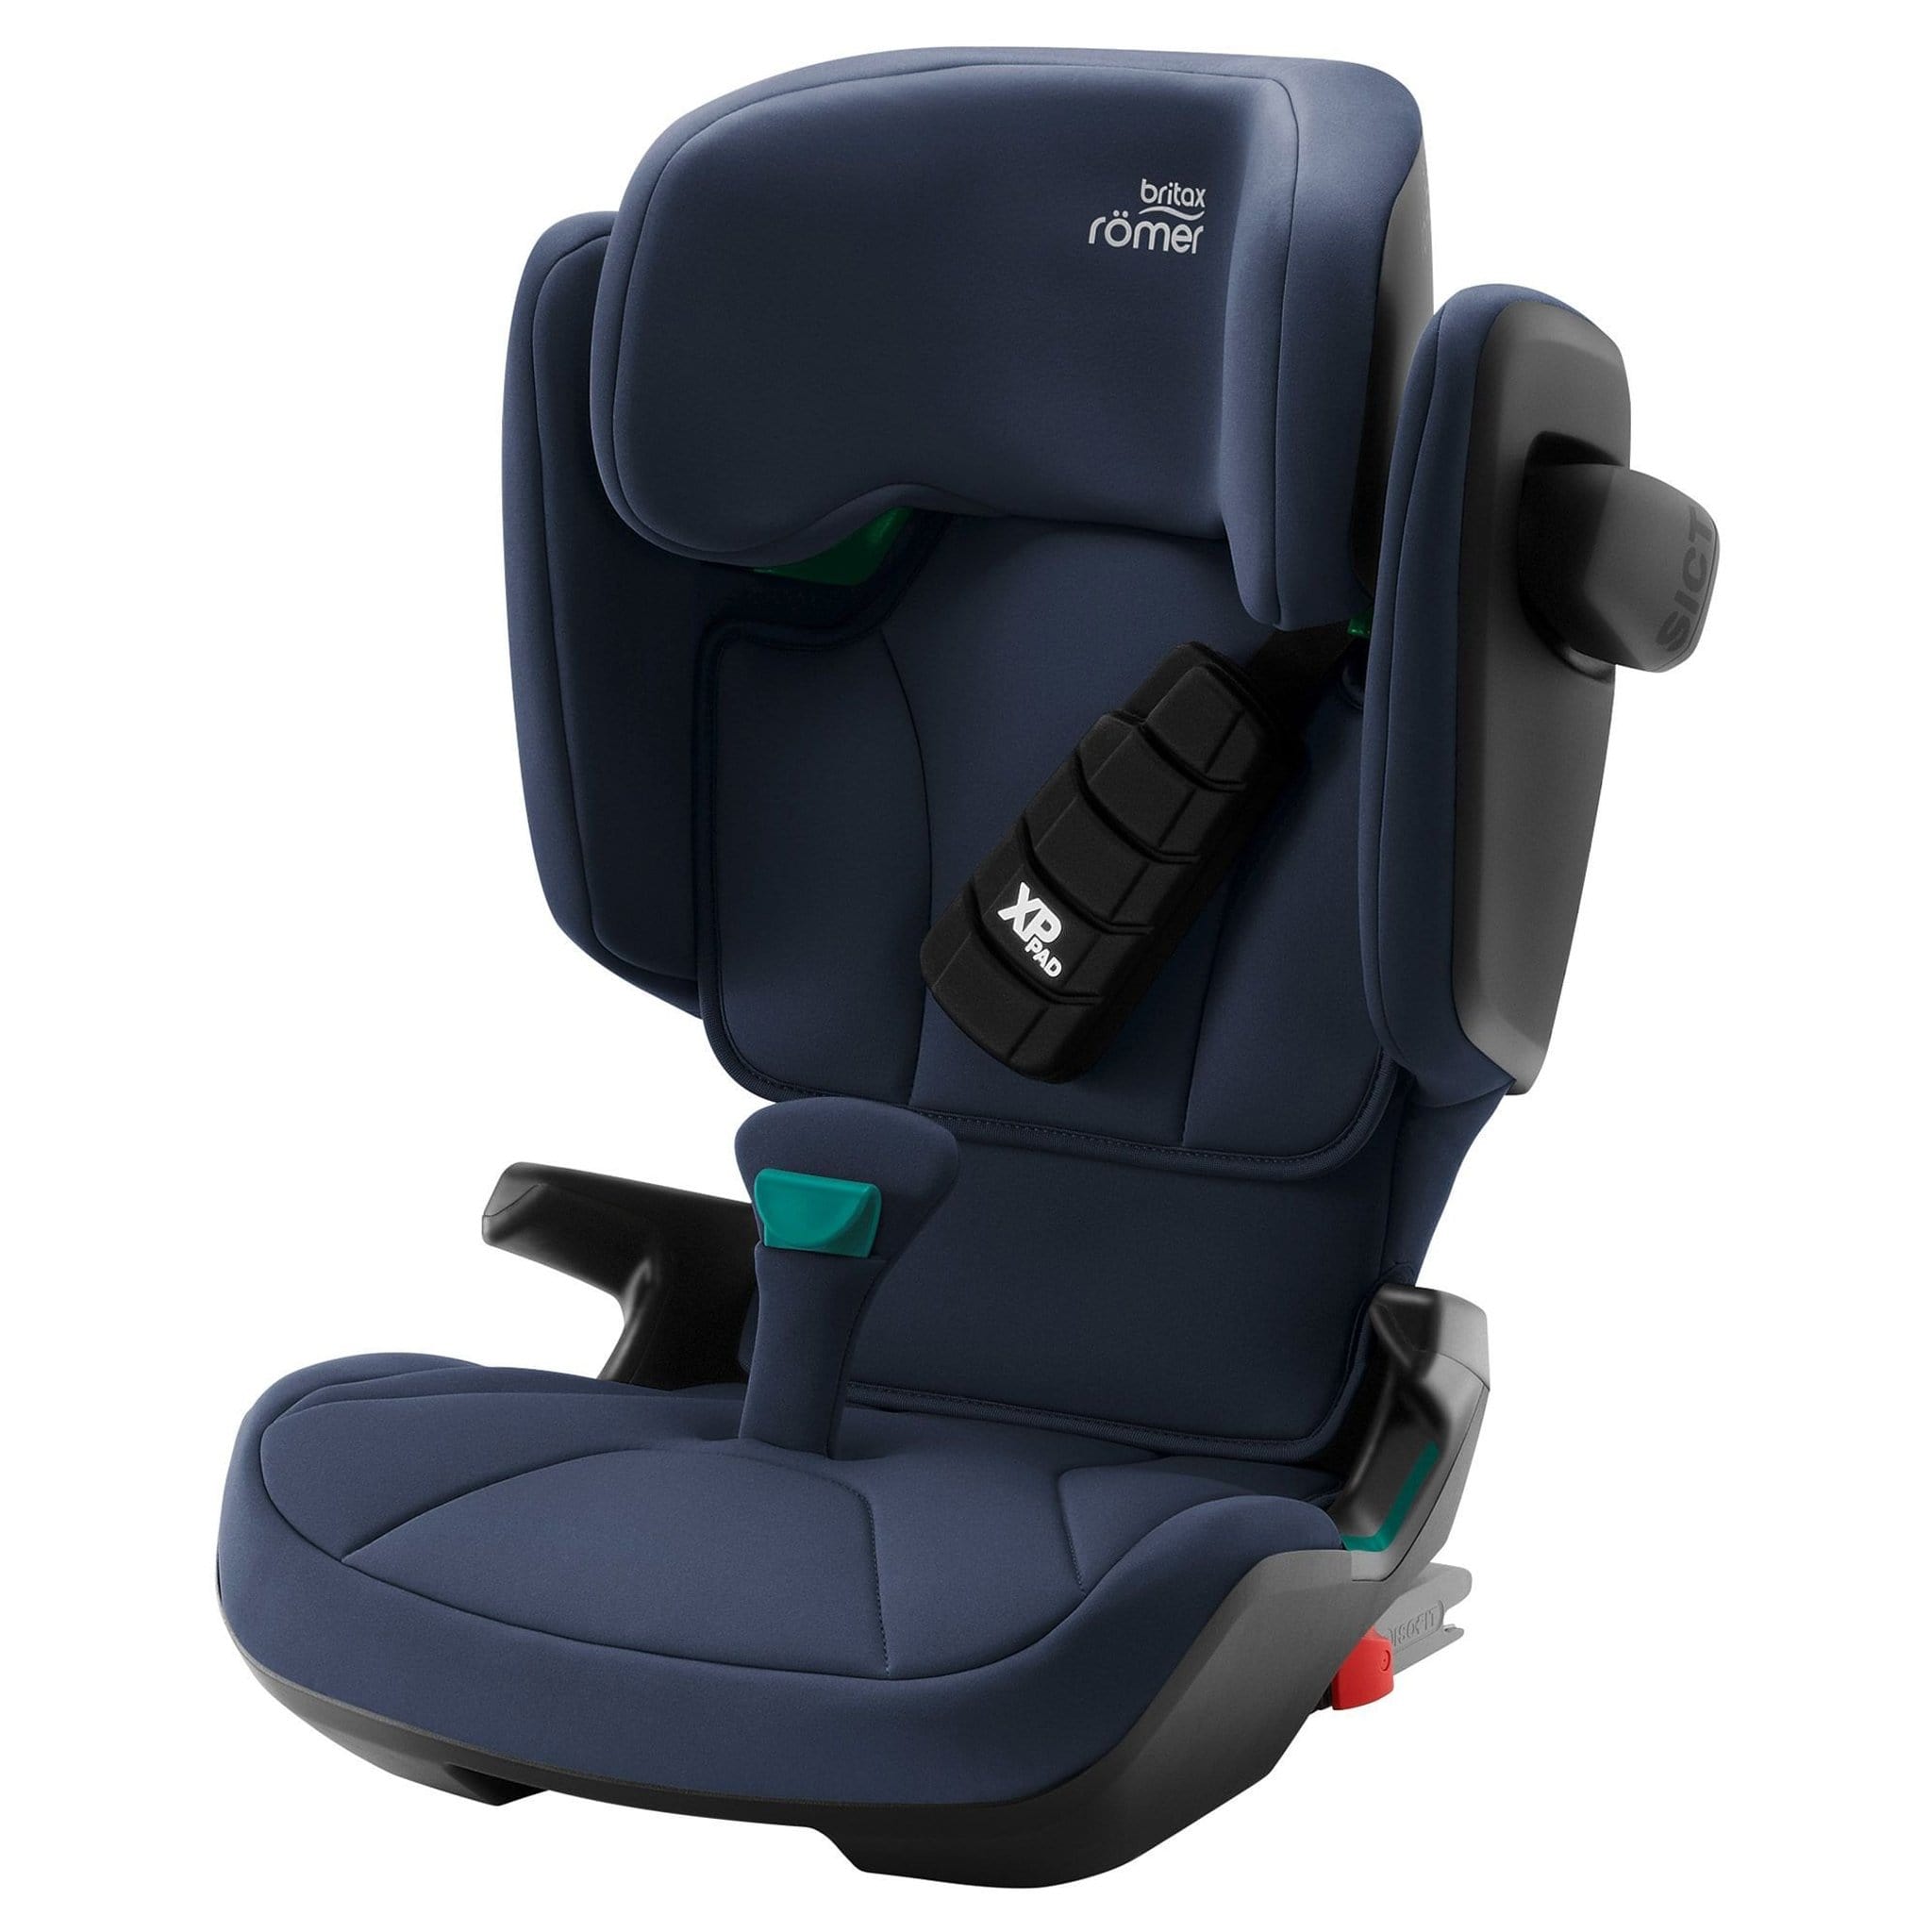 Britax highback booster seats Britax Kidfix i-Size Moonlight Blue 2000035122